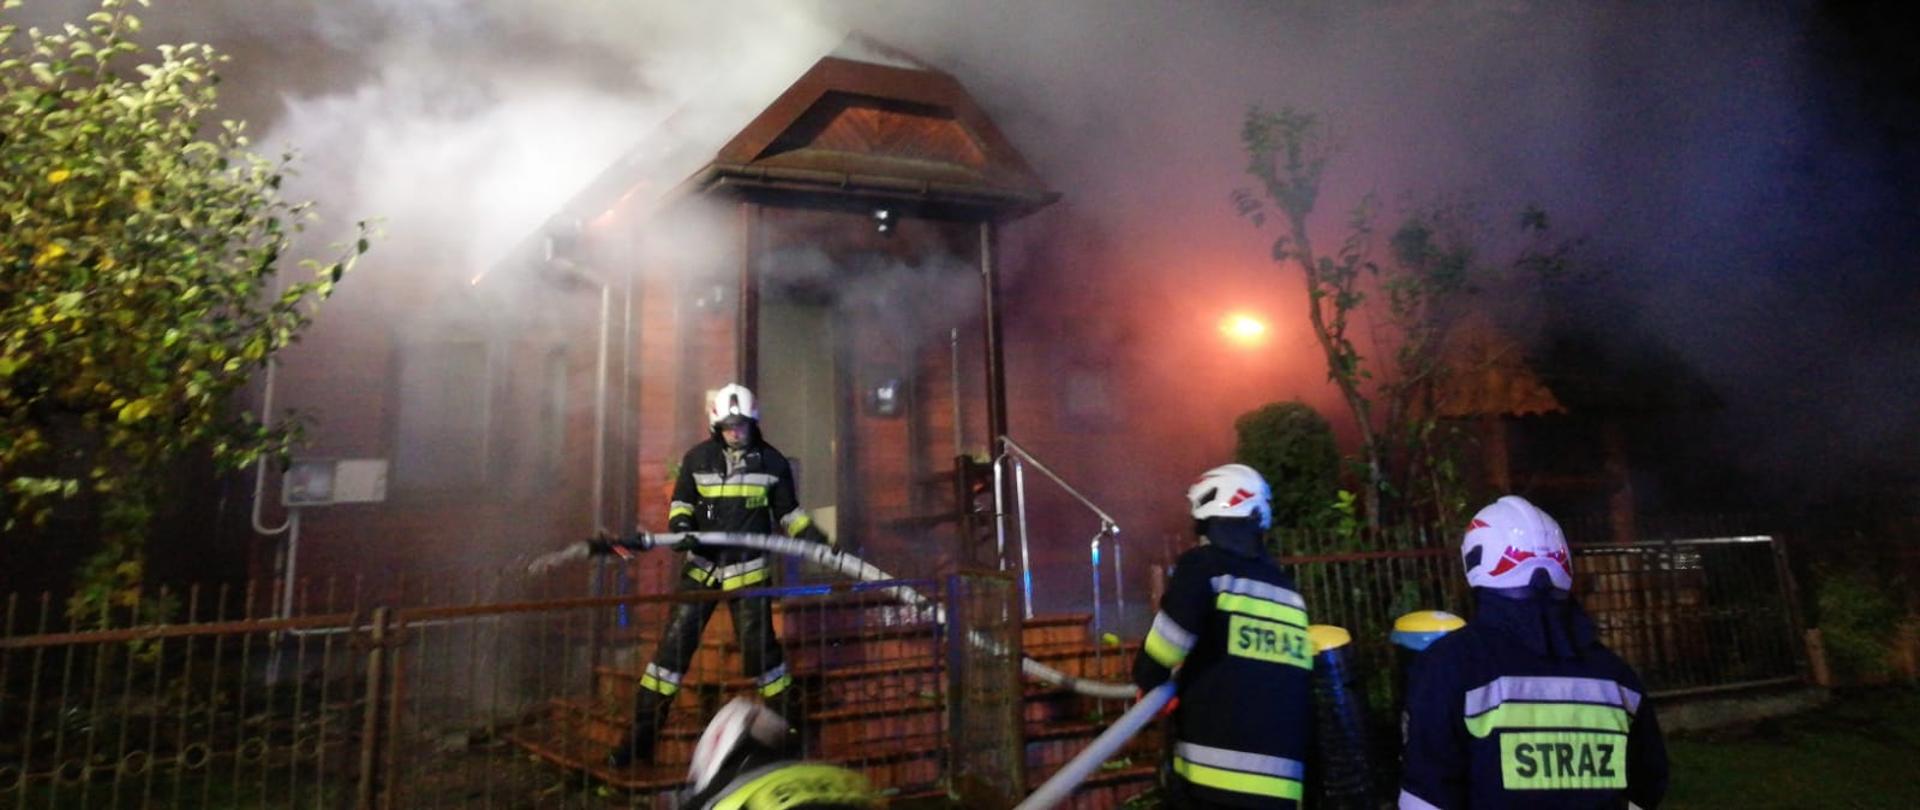 na zdjęciu widać strażaków z prądem wody z zewnątrz budynku, z budynku wychodzi dym